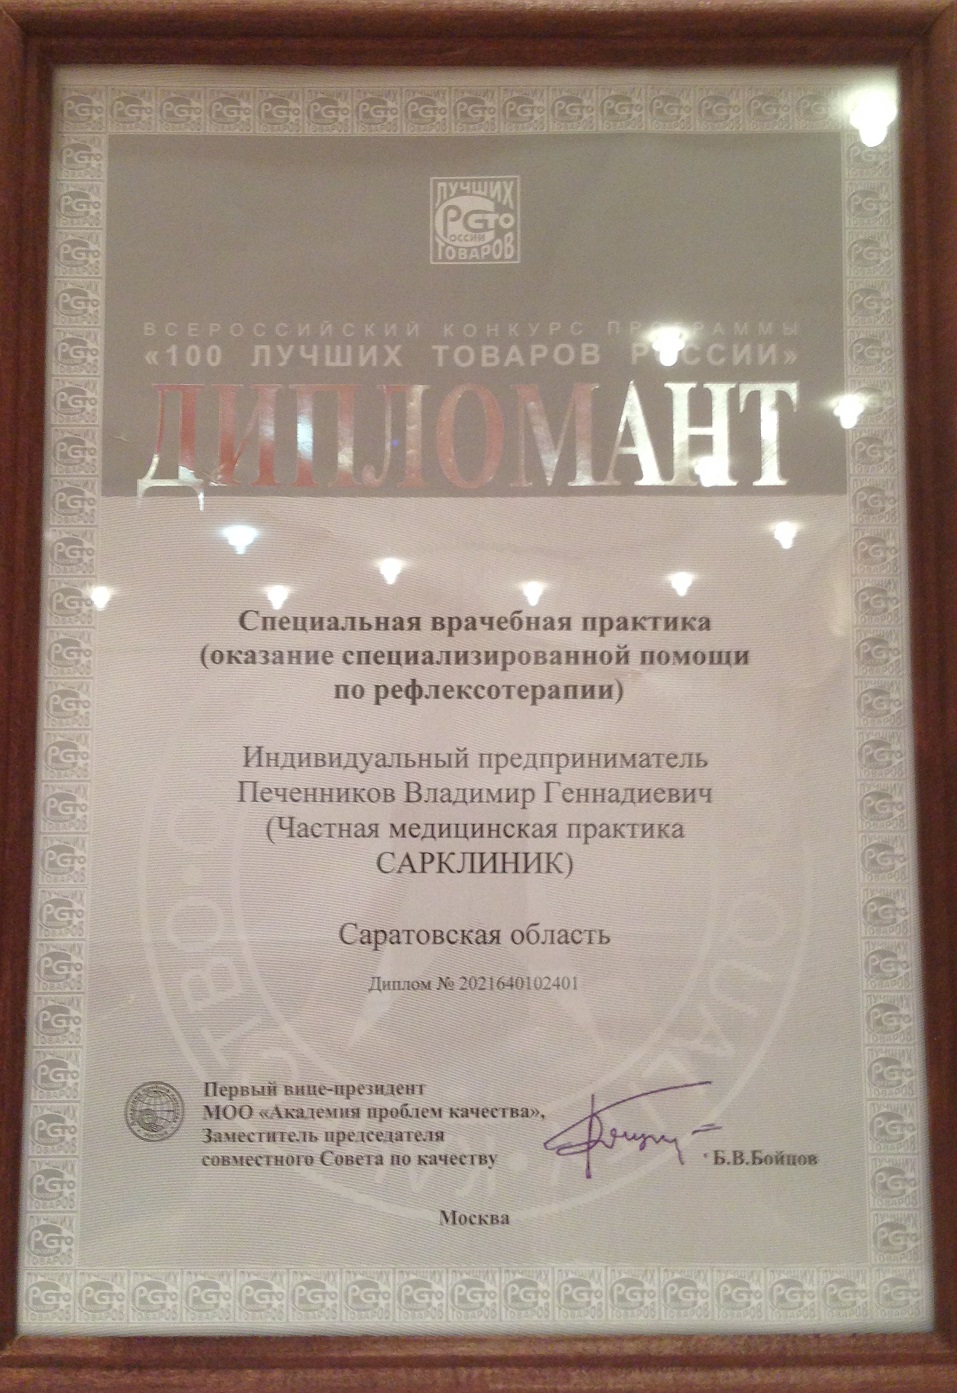 Диплом дипломанта конкурса "100 лучших товаров России 2021"